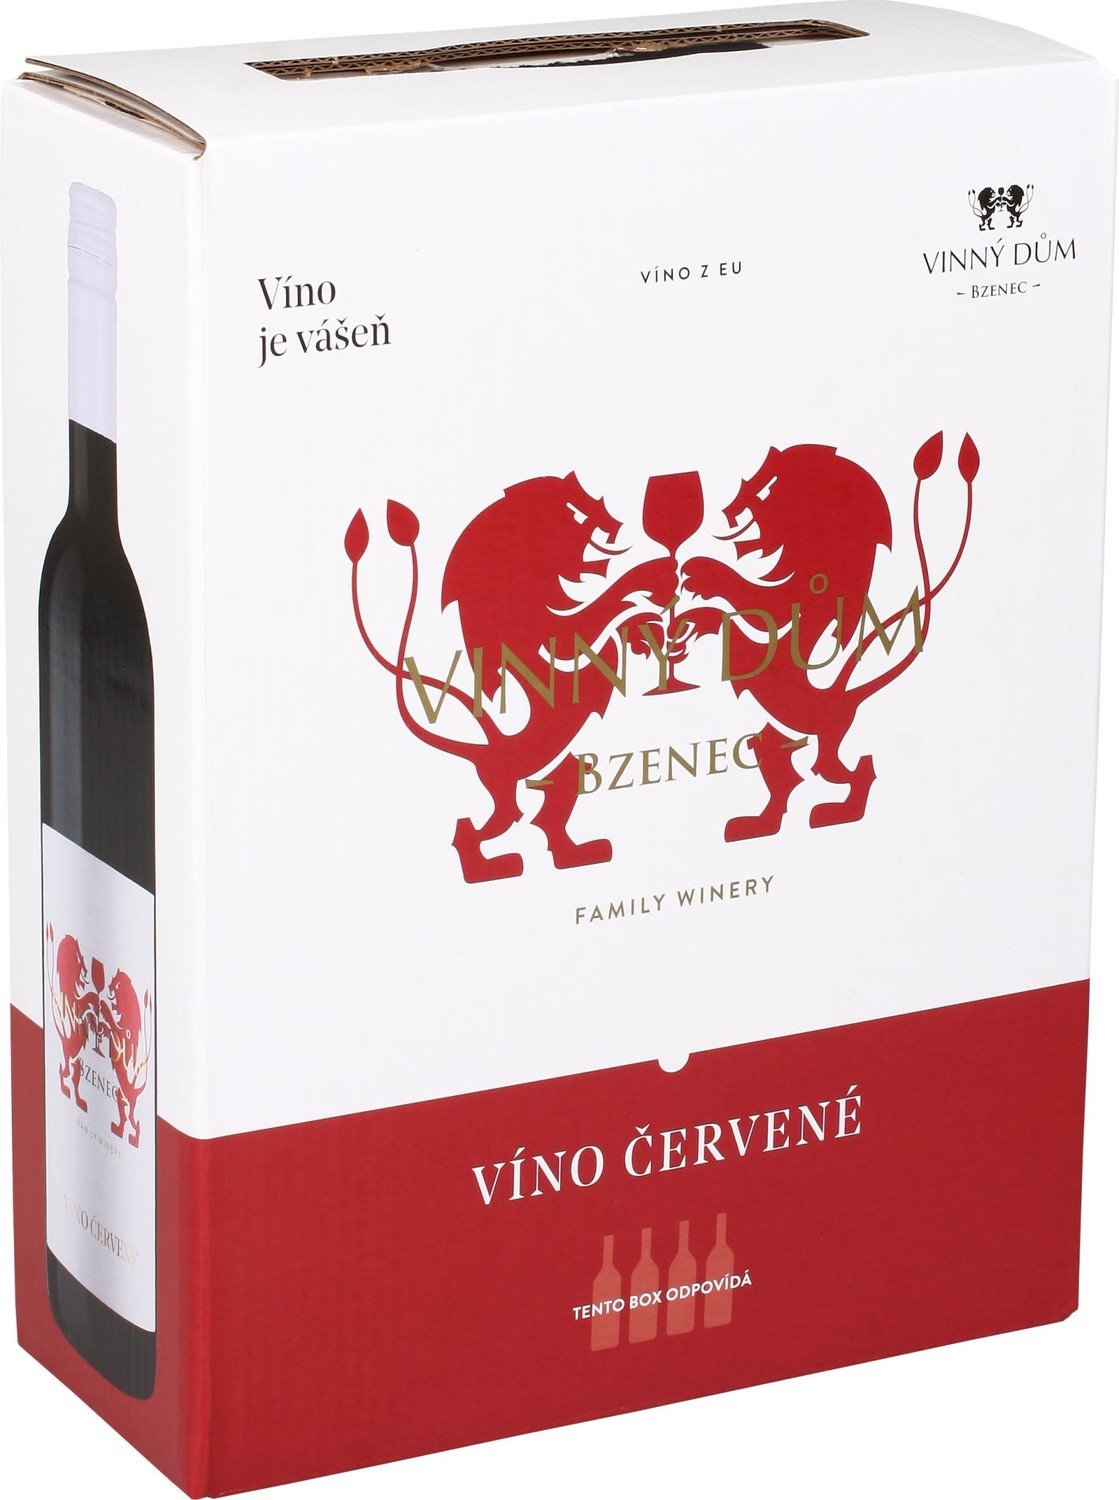 Vinný dům Červené víno Modrý portugal - suché, bag in box,3 l